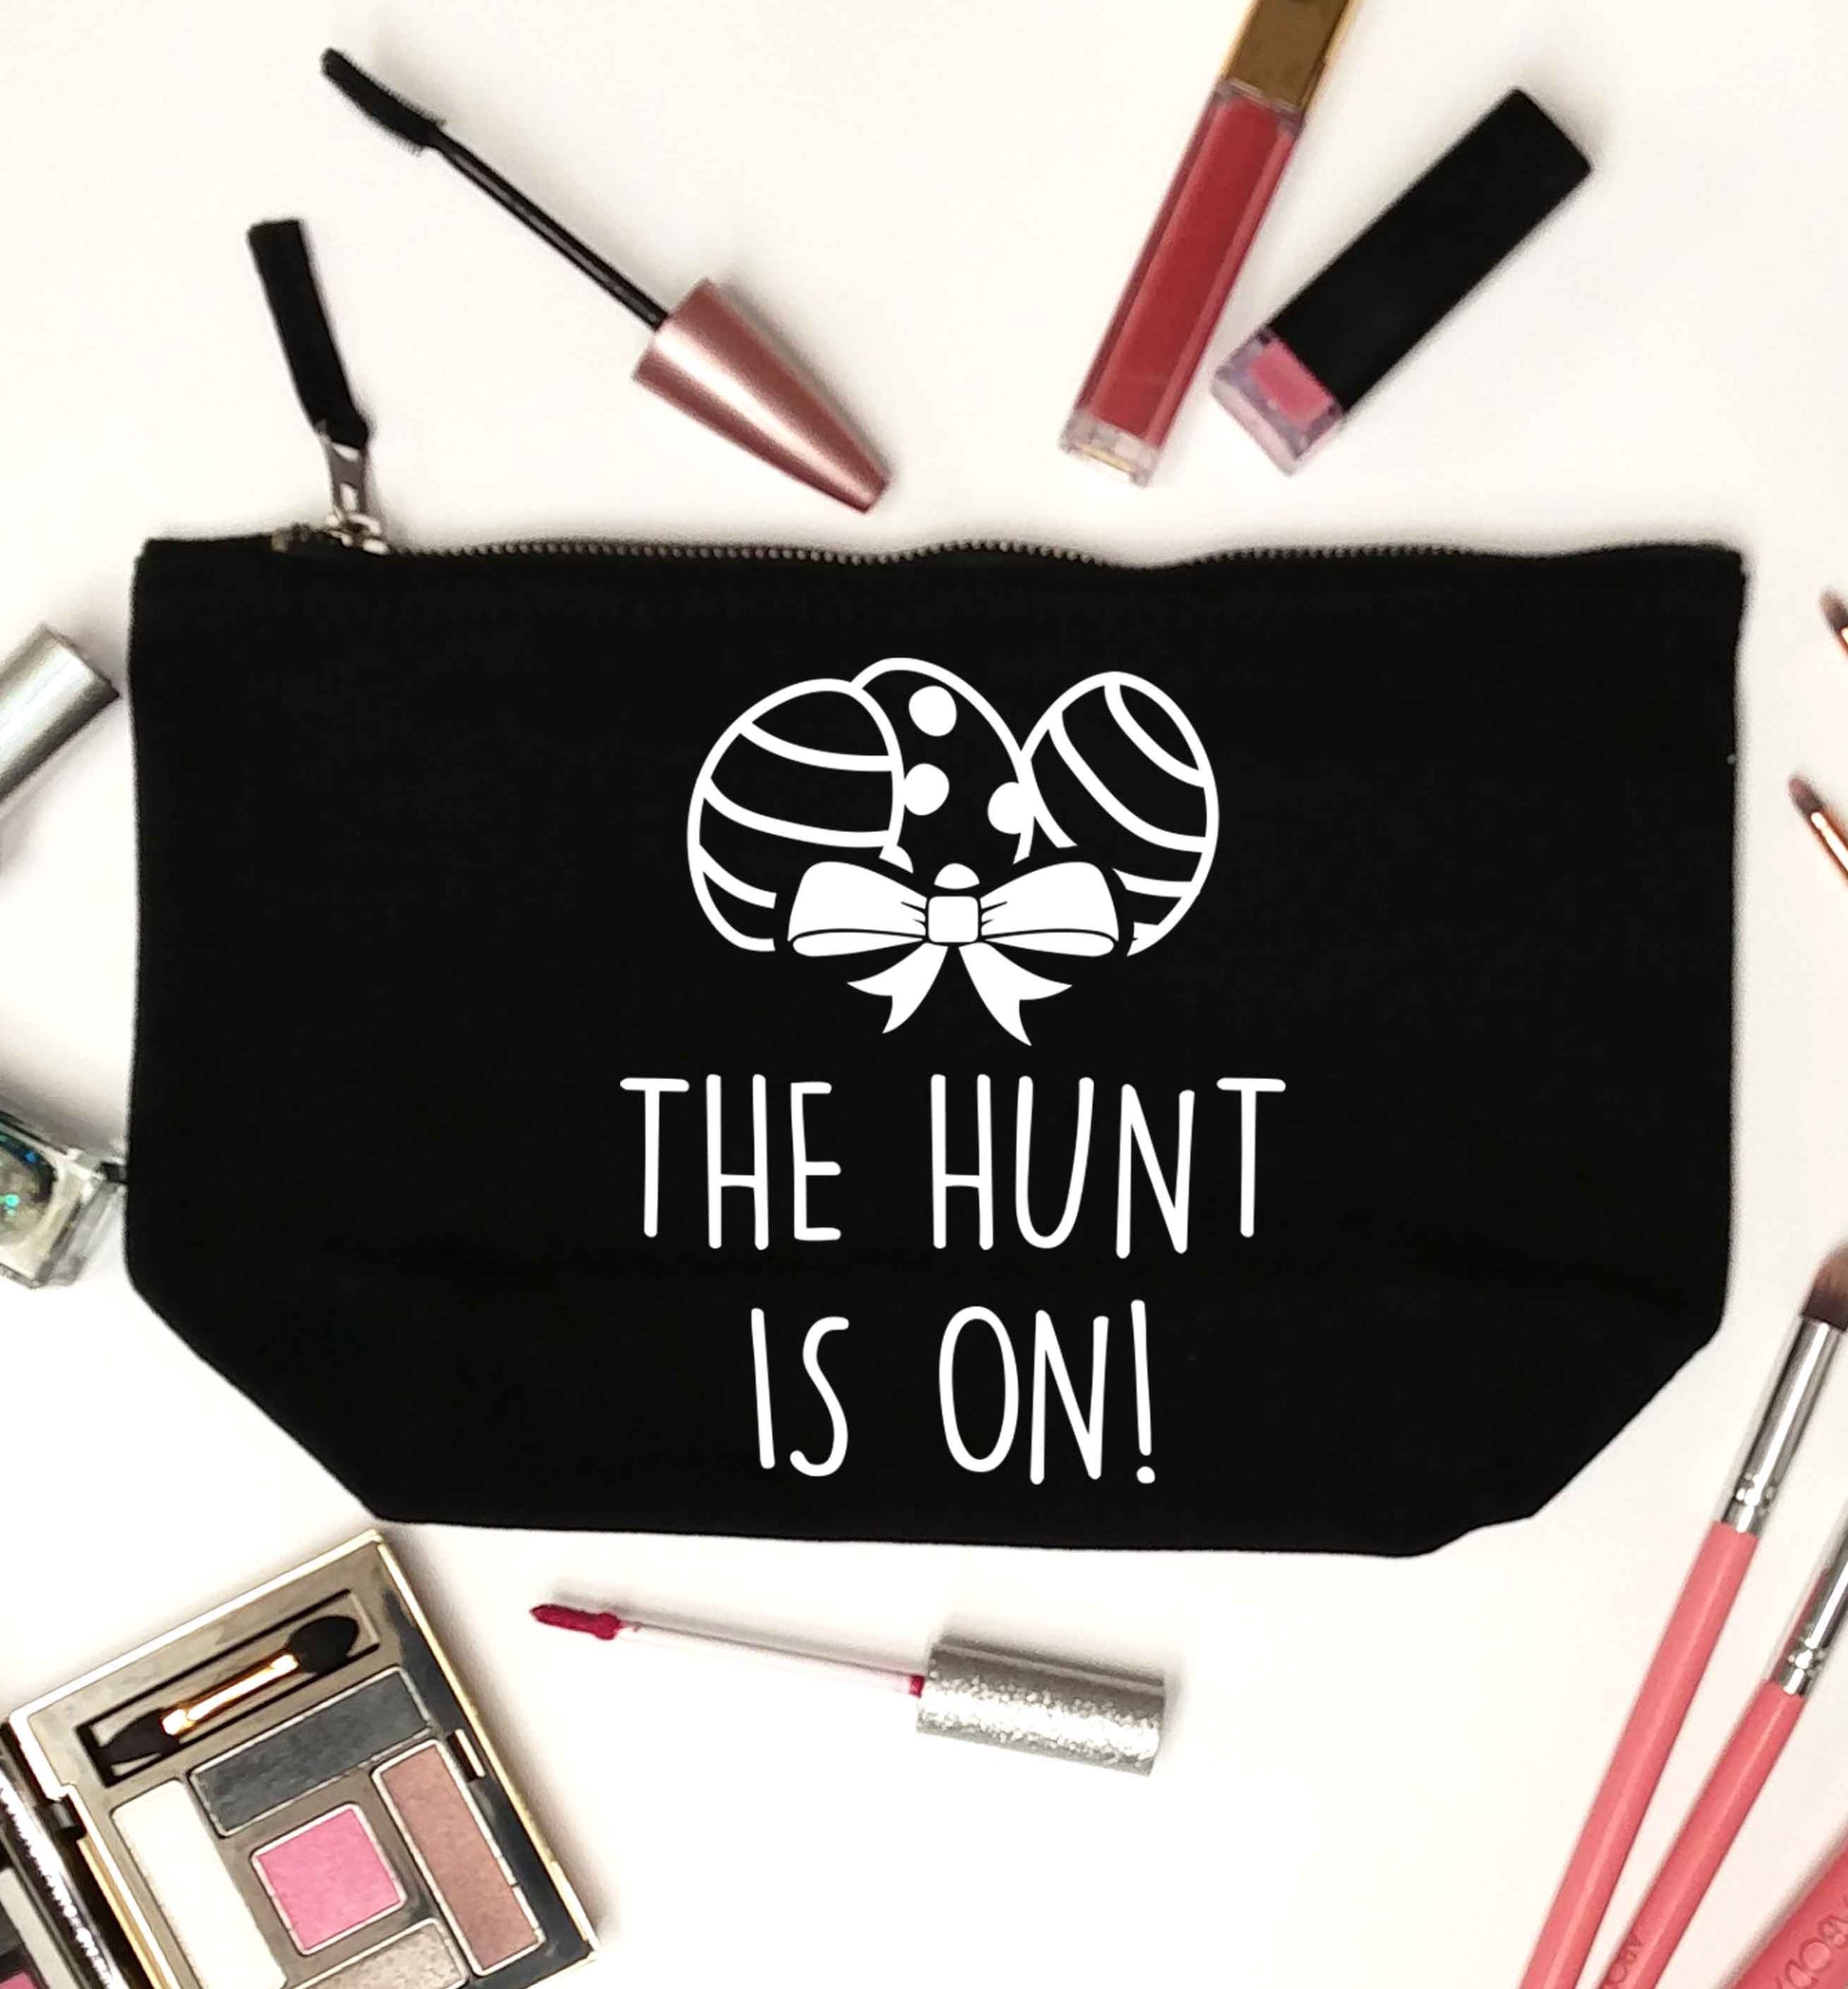 The hunt is on black makeup bag